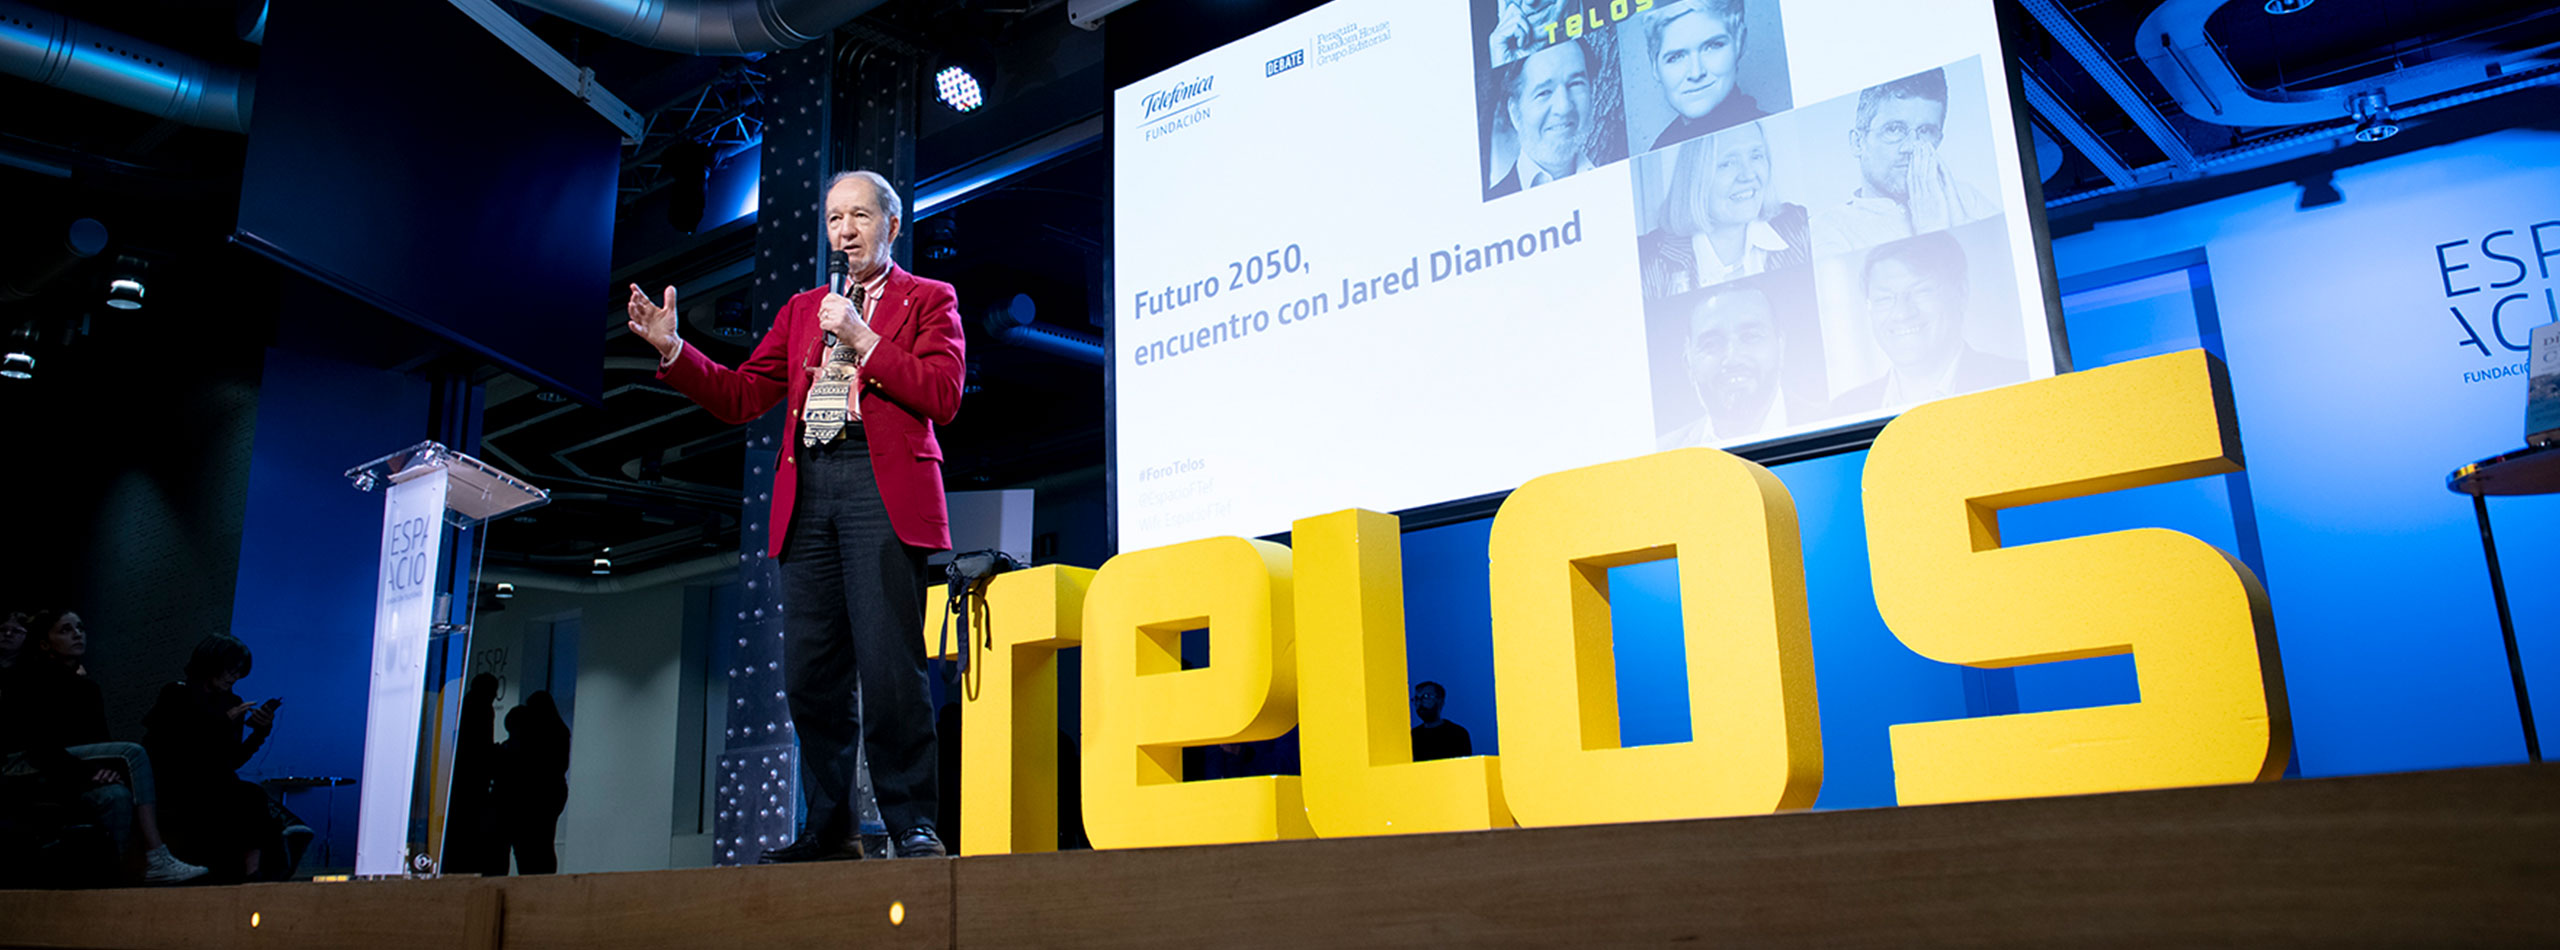 Foro Telos (jornada IV): Futuro 2050, encuentro con Jared Diamond